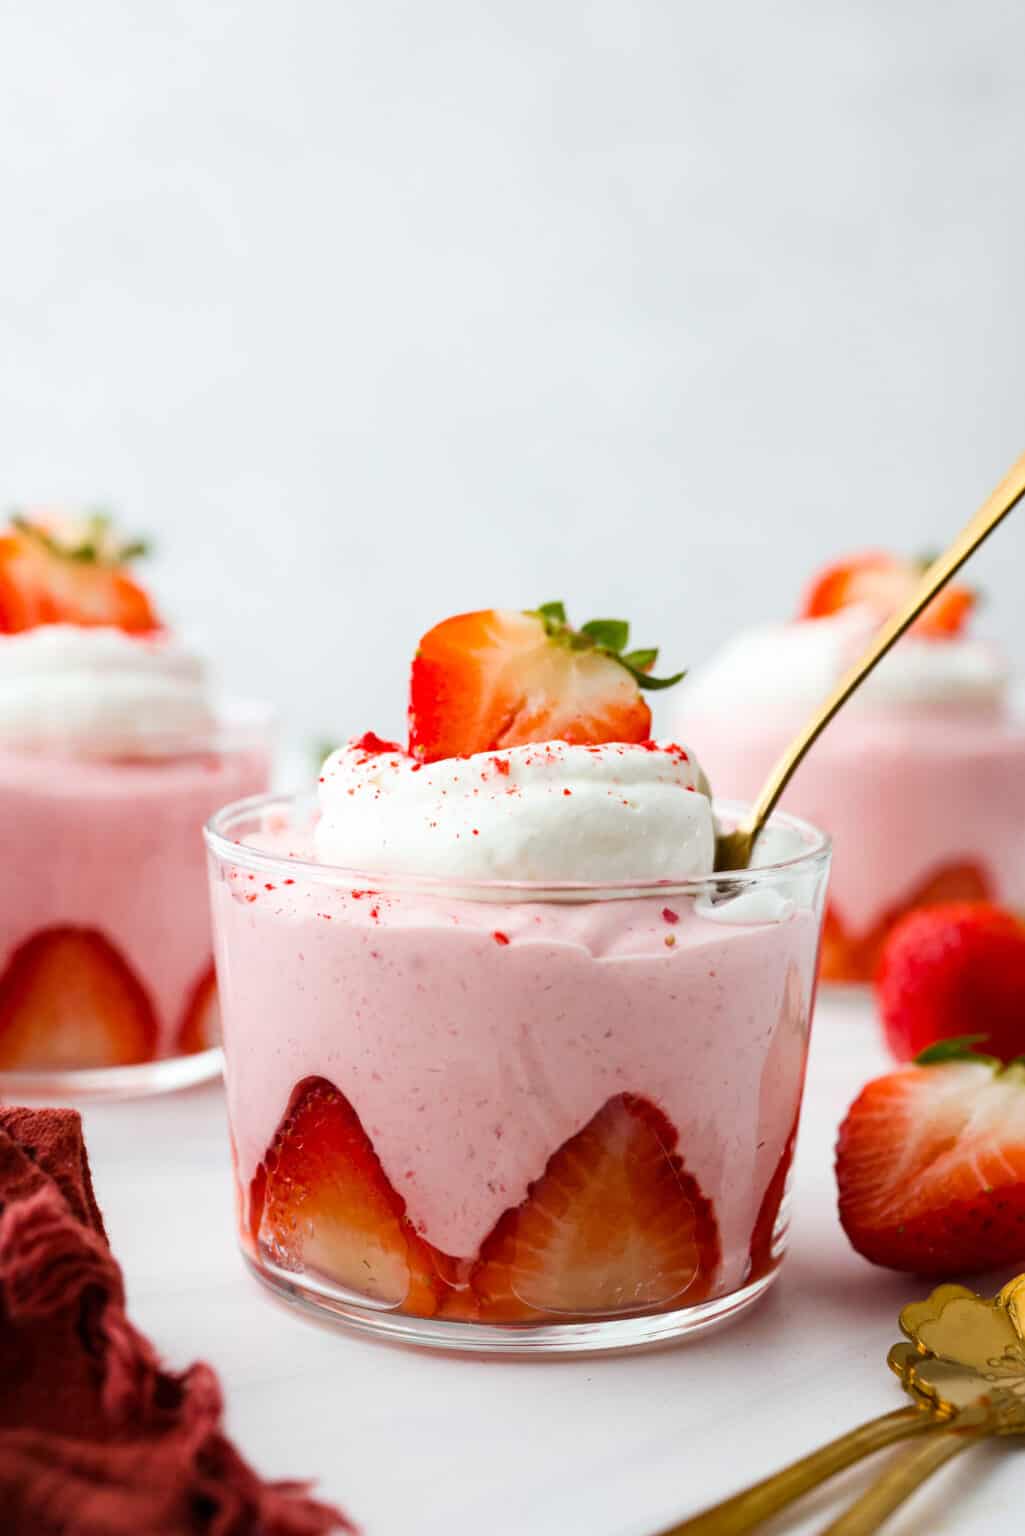 Strawberry Mousse Recipe The Recipe Critic